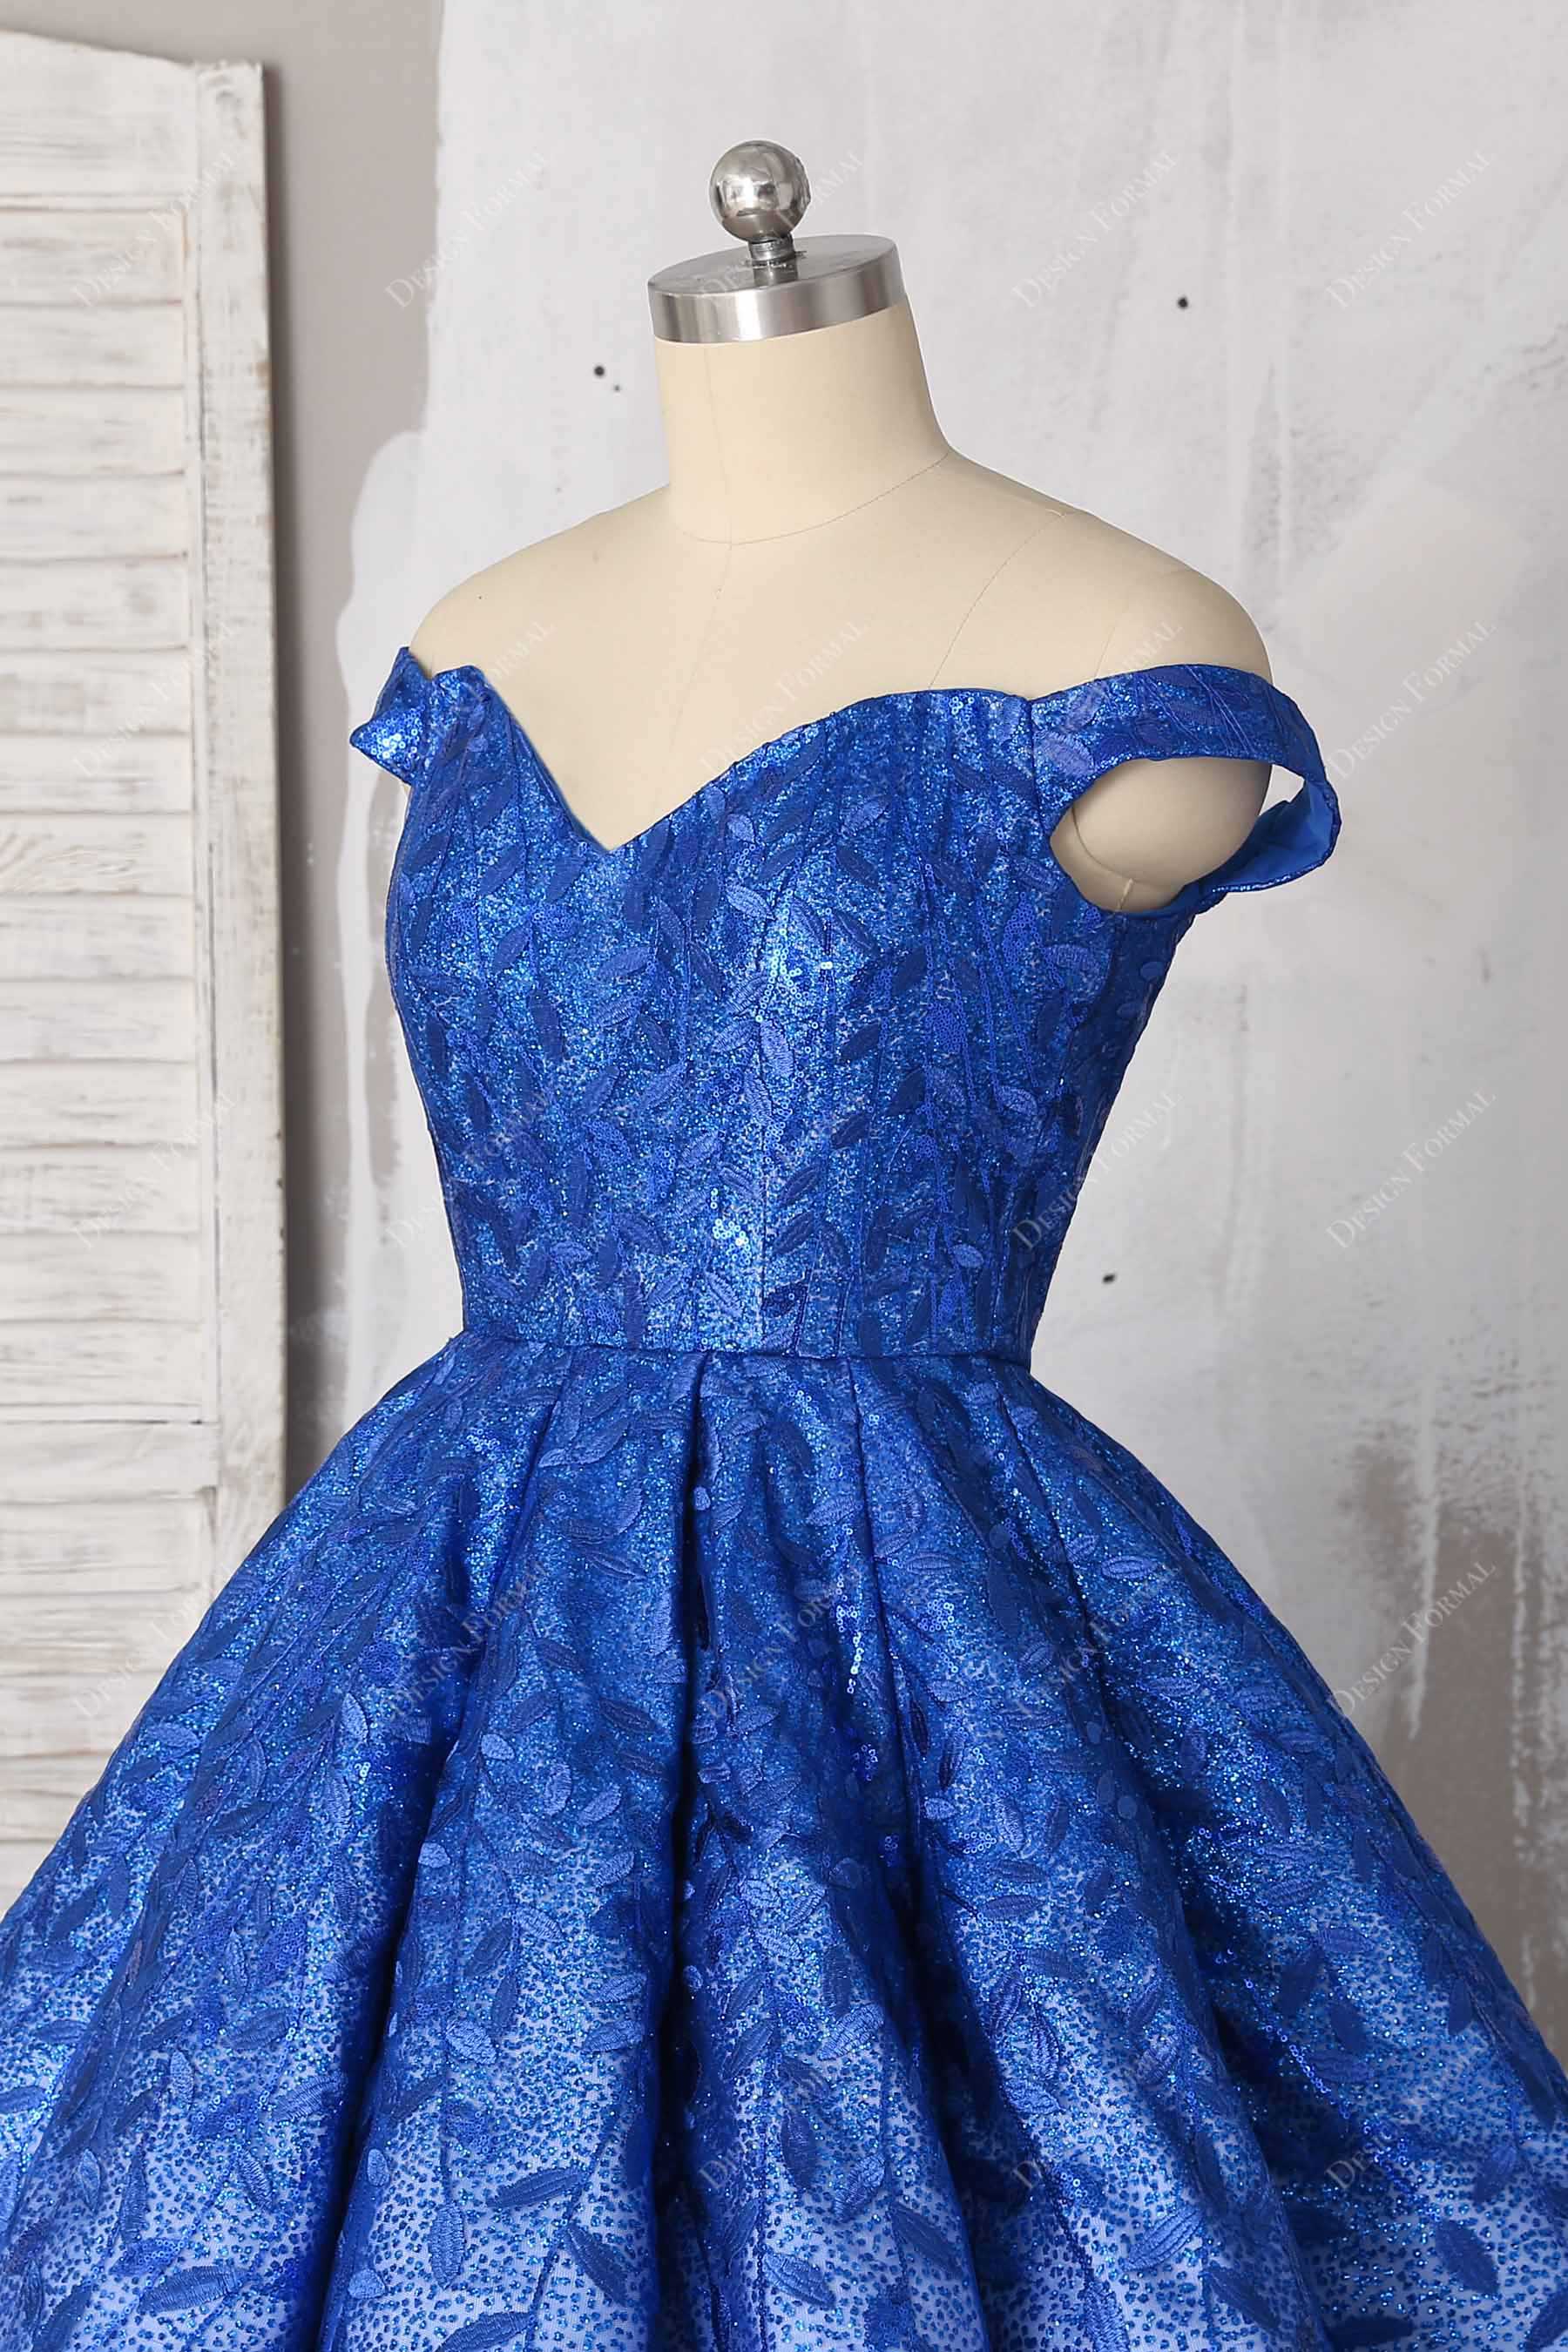 blue leaf patterned lace off-shoulder gown